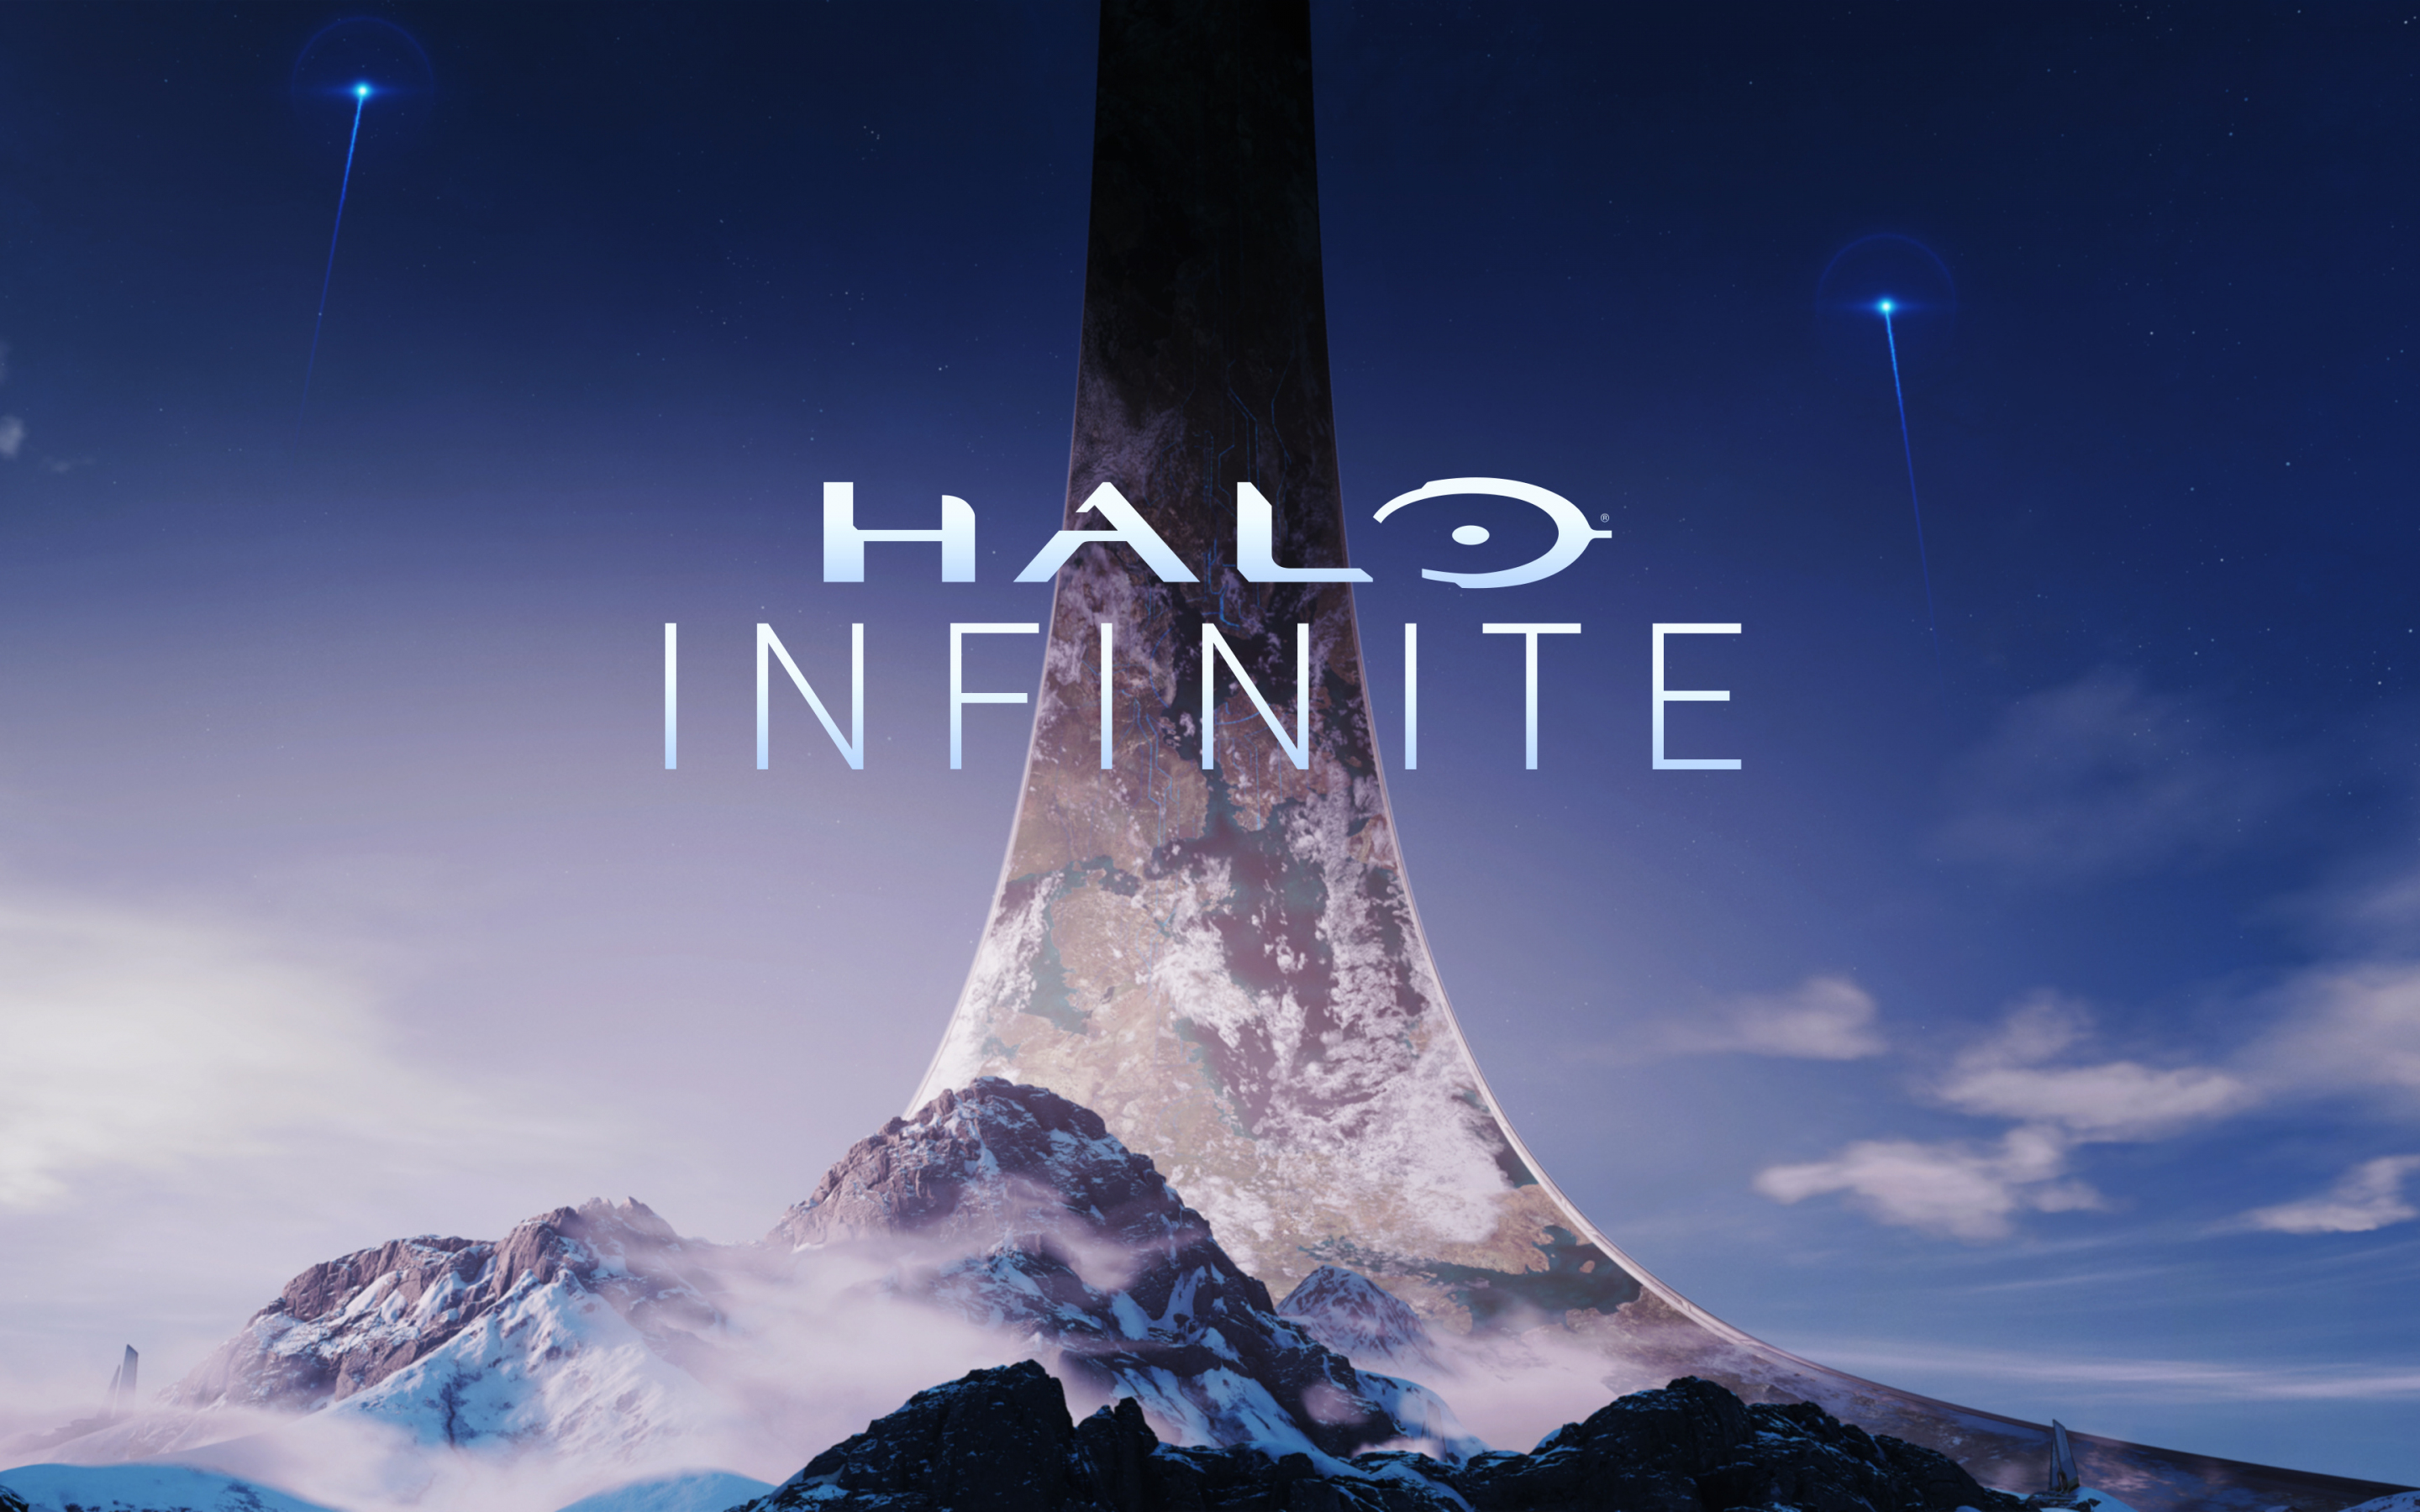 Halo infinite, E3 2018, xbox one, pc games, 2880x1800 wallpaper